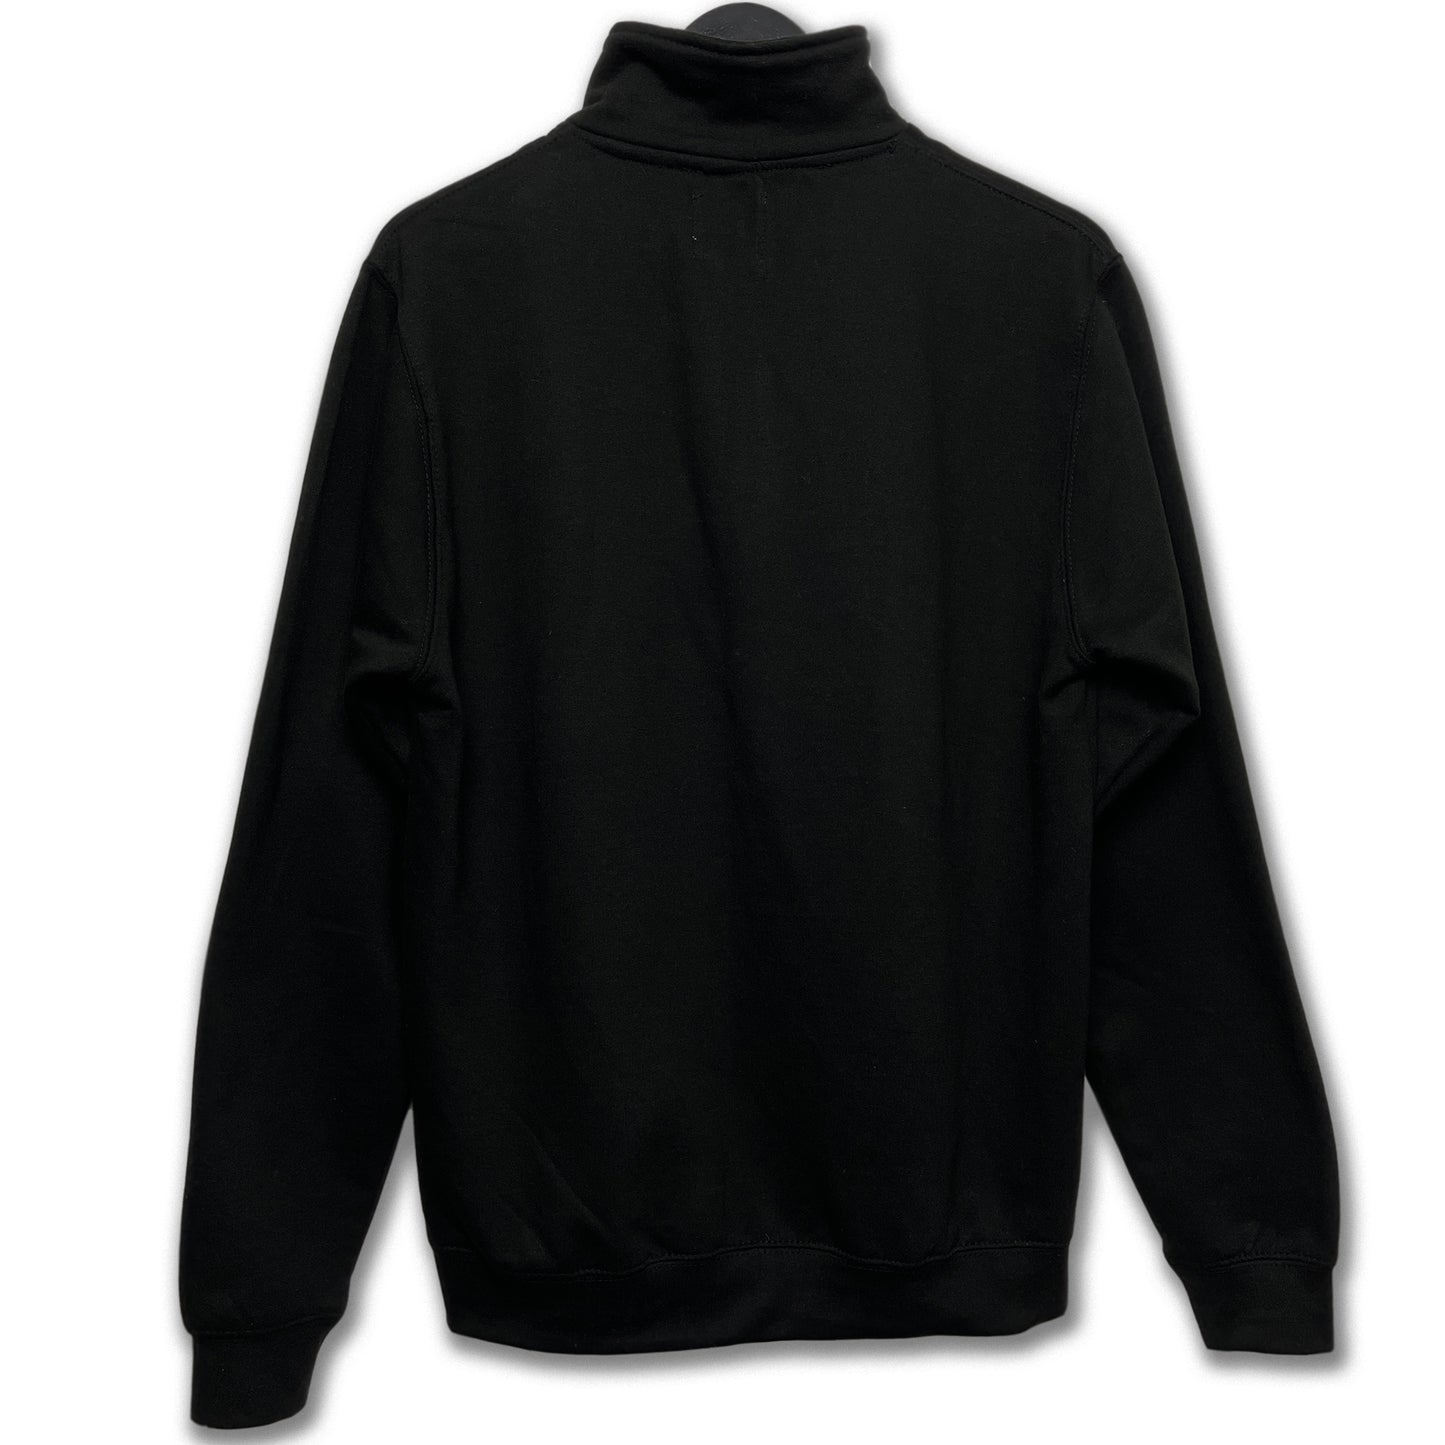 Black 1/2 Zip Sweatshirt